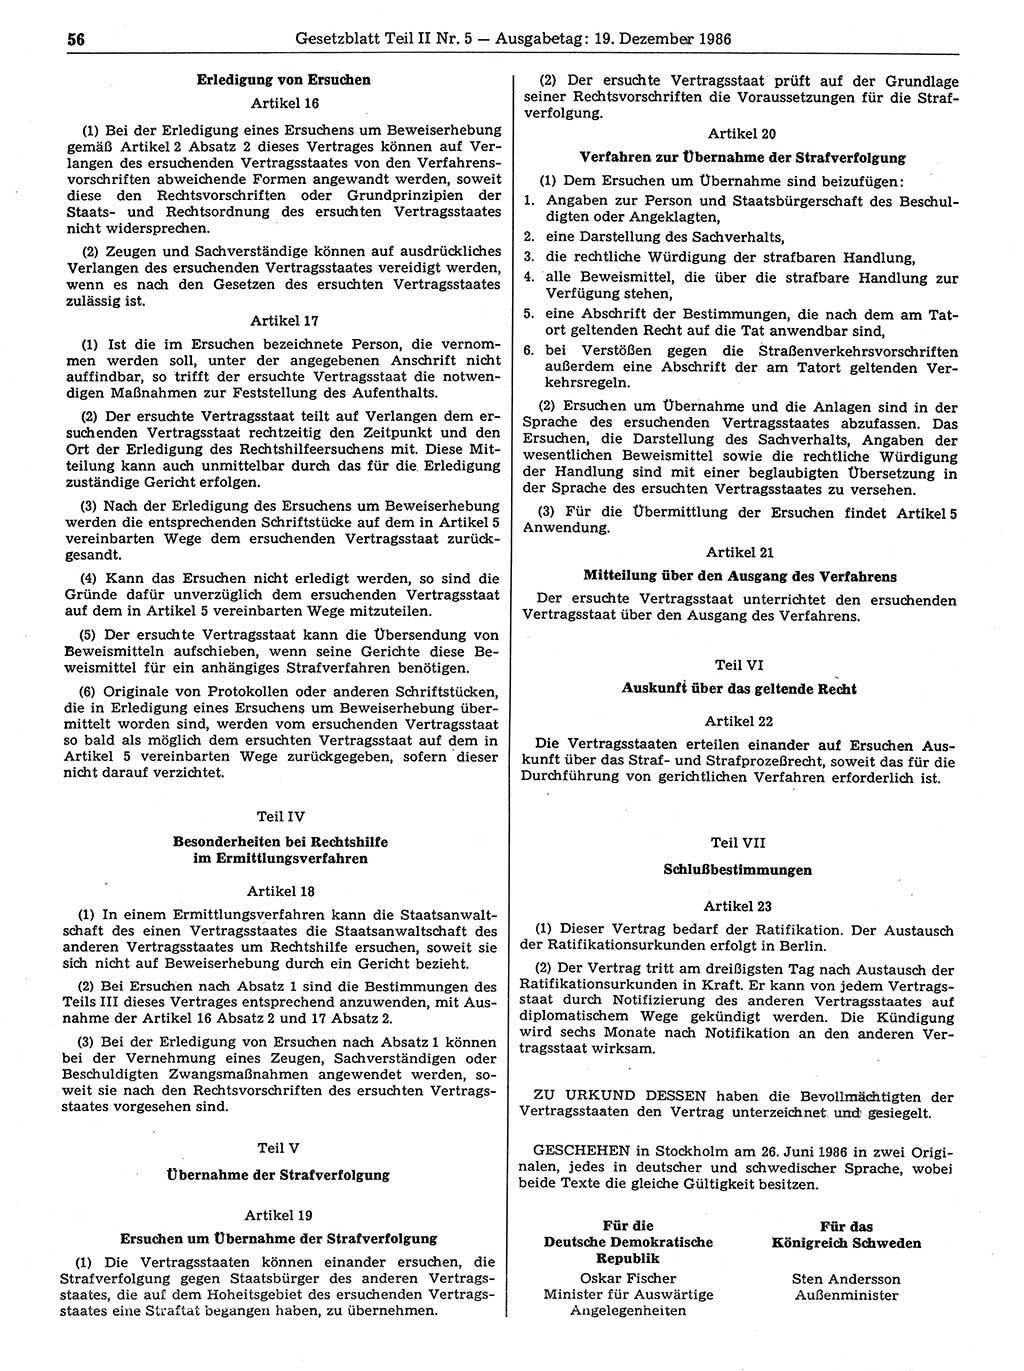 Gesetzblatt (GBl.) der Deutschen Demokratischen Republik (DDR) Teil ⅠⅠ 1986, Seite 56 (GBl. DDR ⅠⅠ 1986, S. 56)